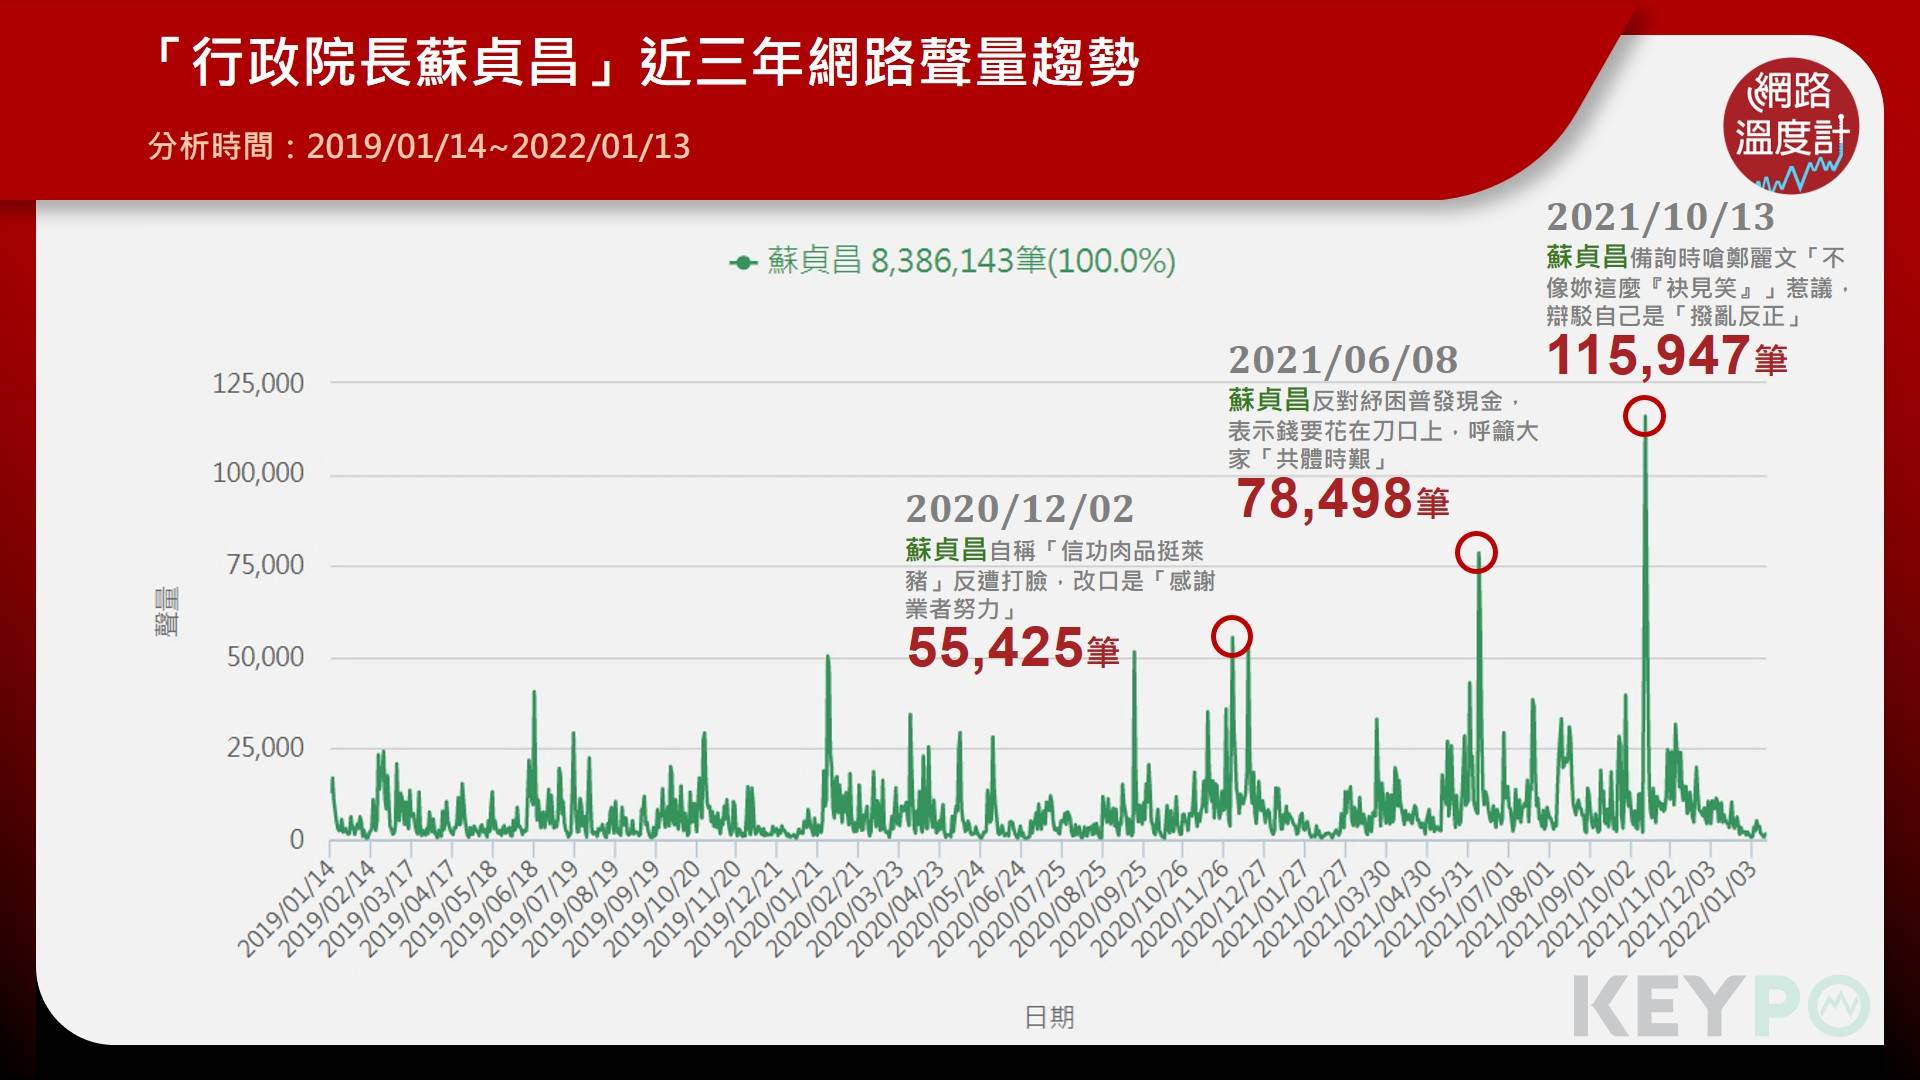 「行政院長蘇貞昌」近三年網路聲量趨勢